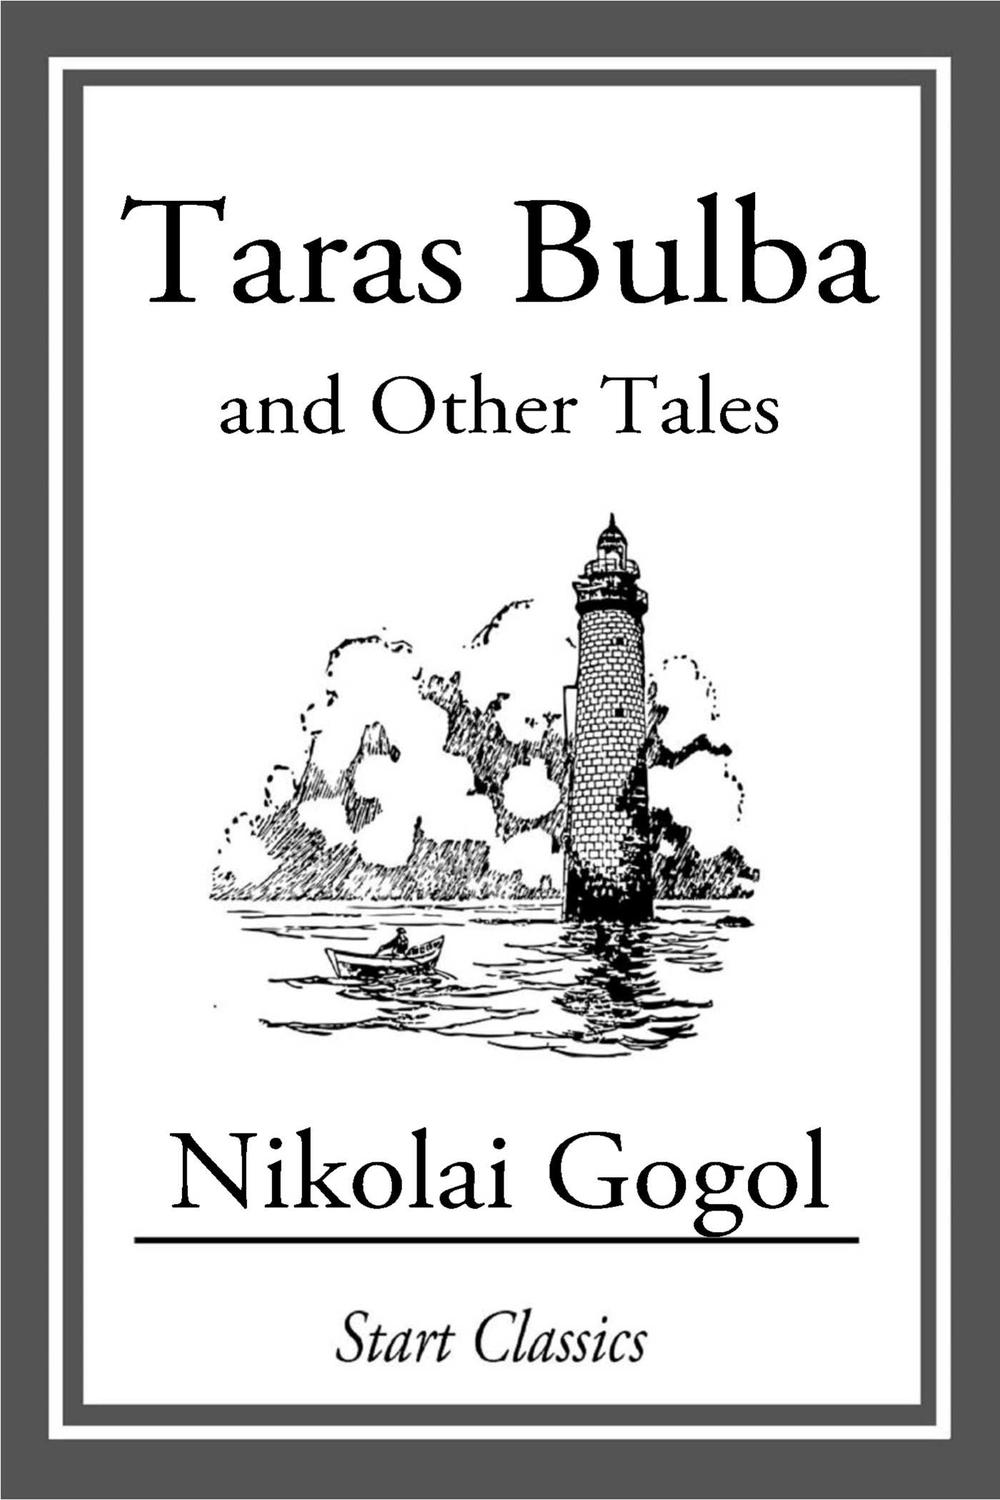 Taras Bulba - Nikolai Gogol